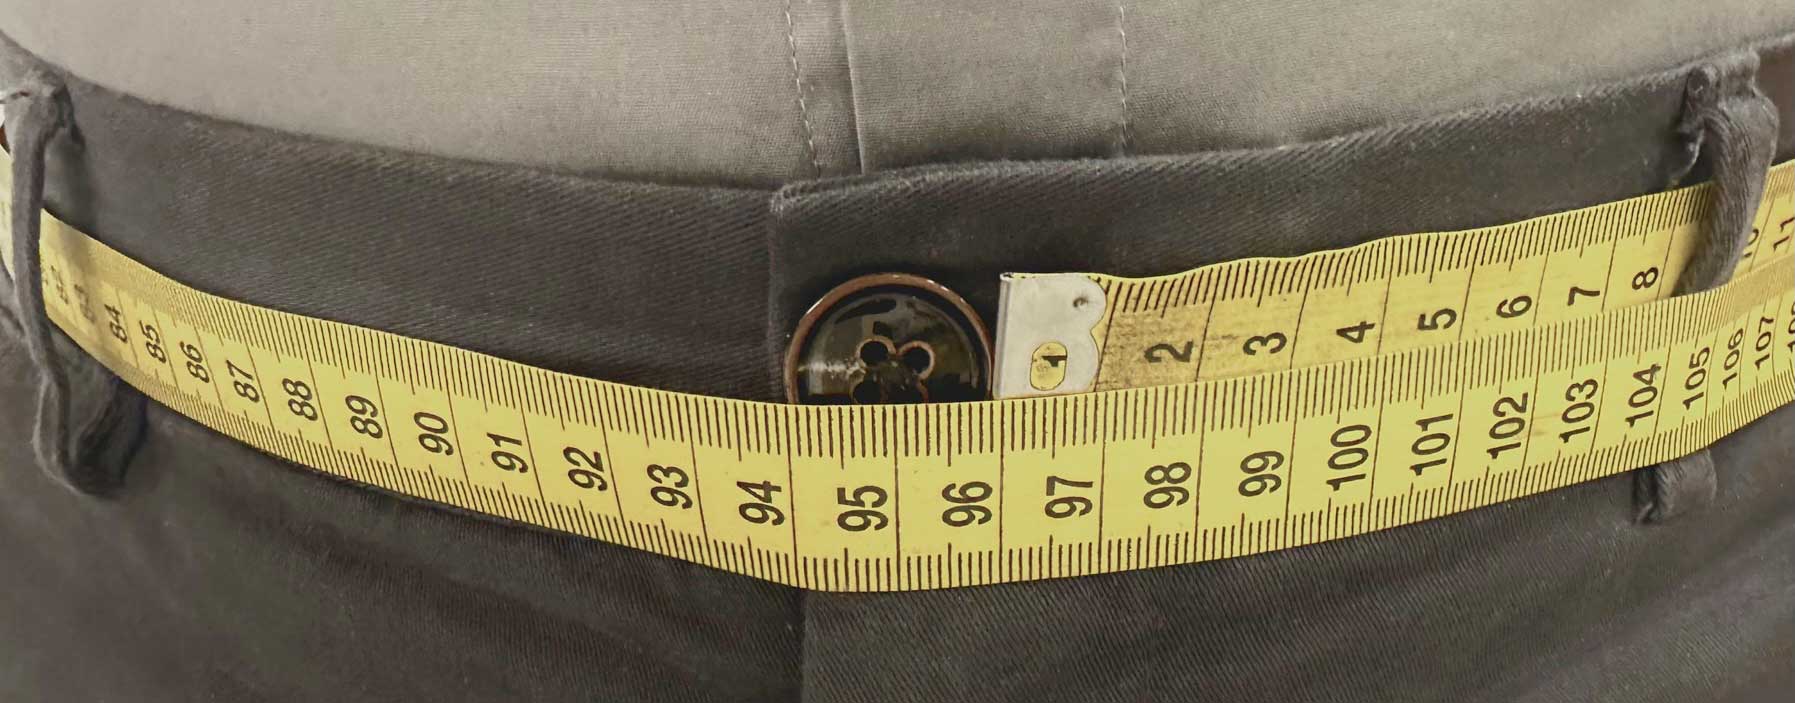 Medida del cinturón a través de las trabillas del pantalón